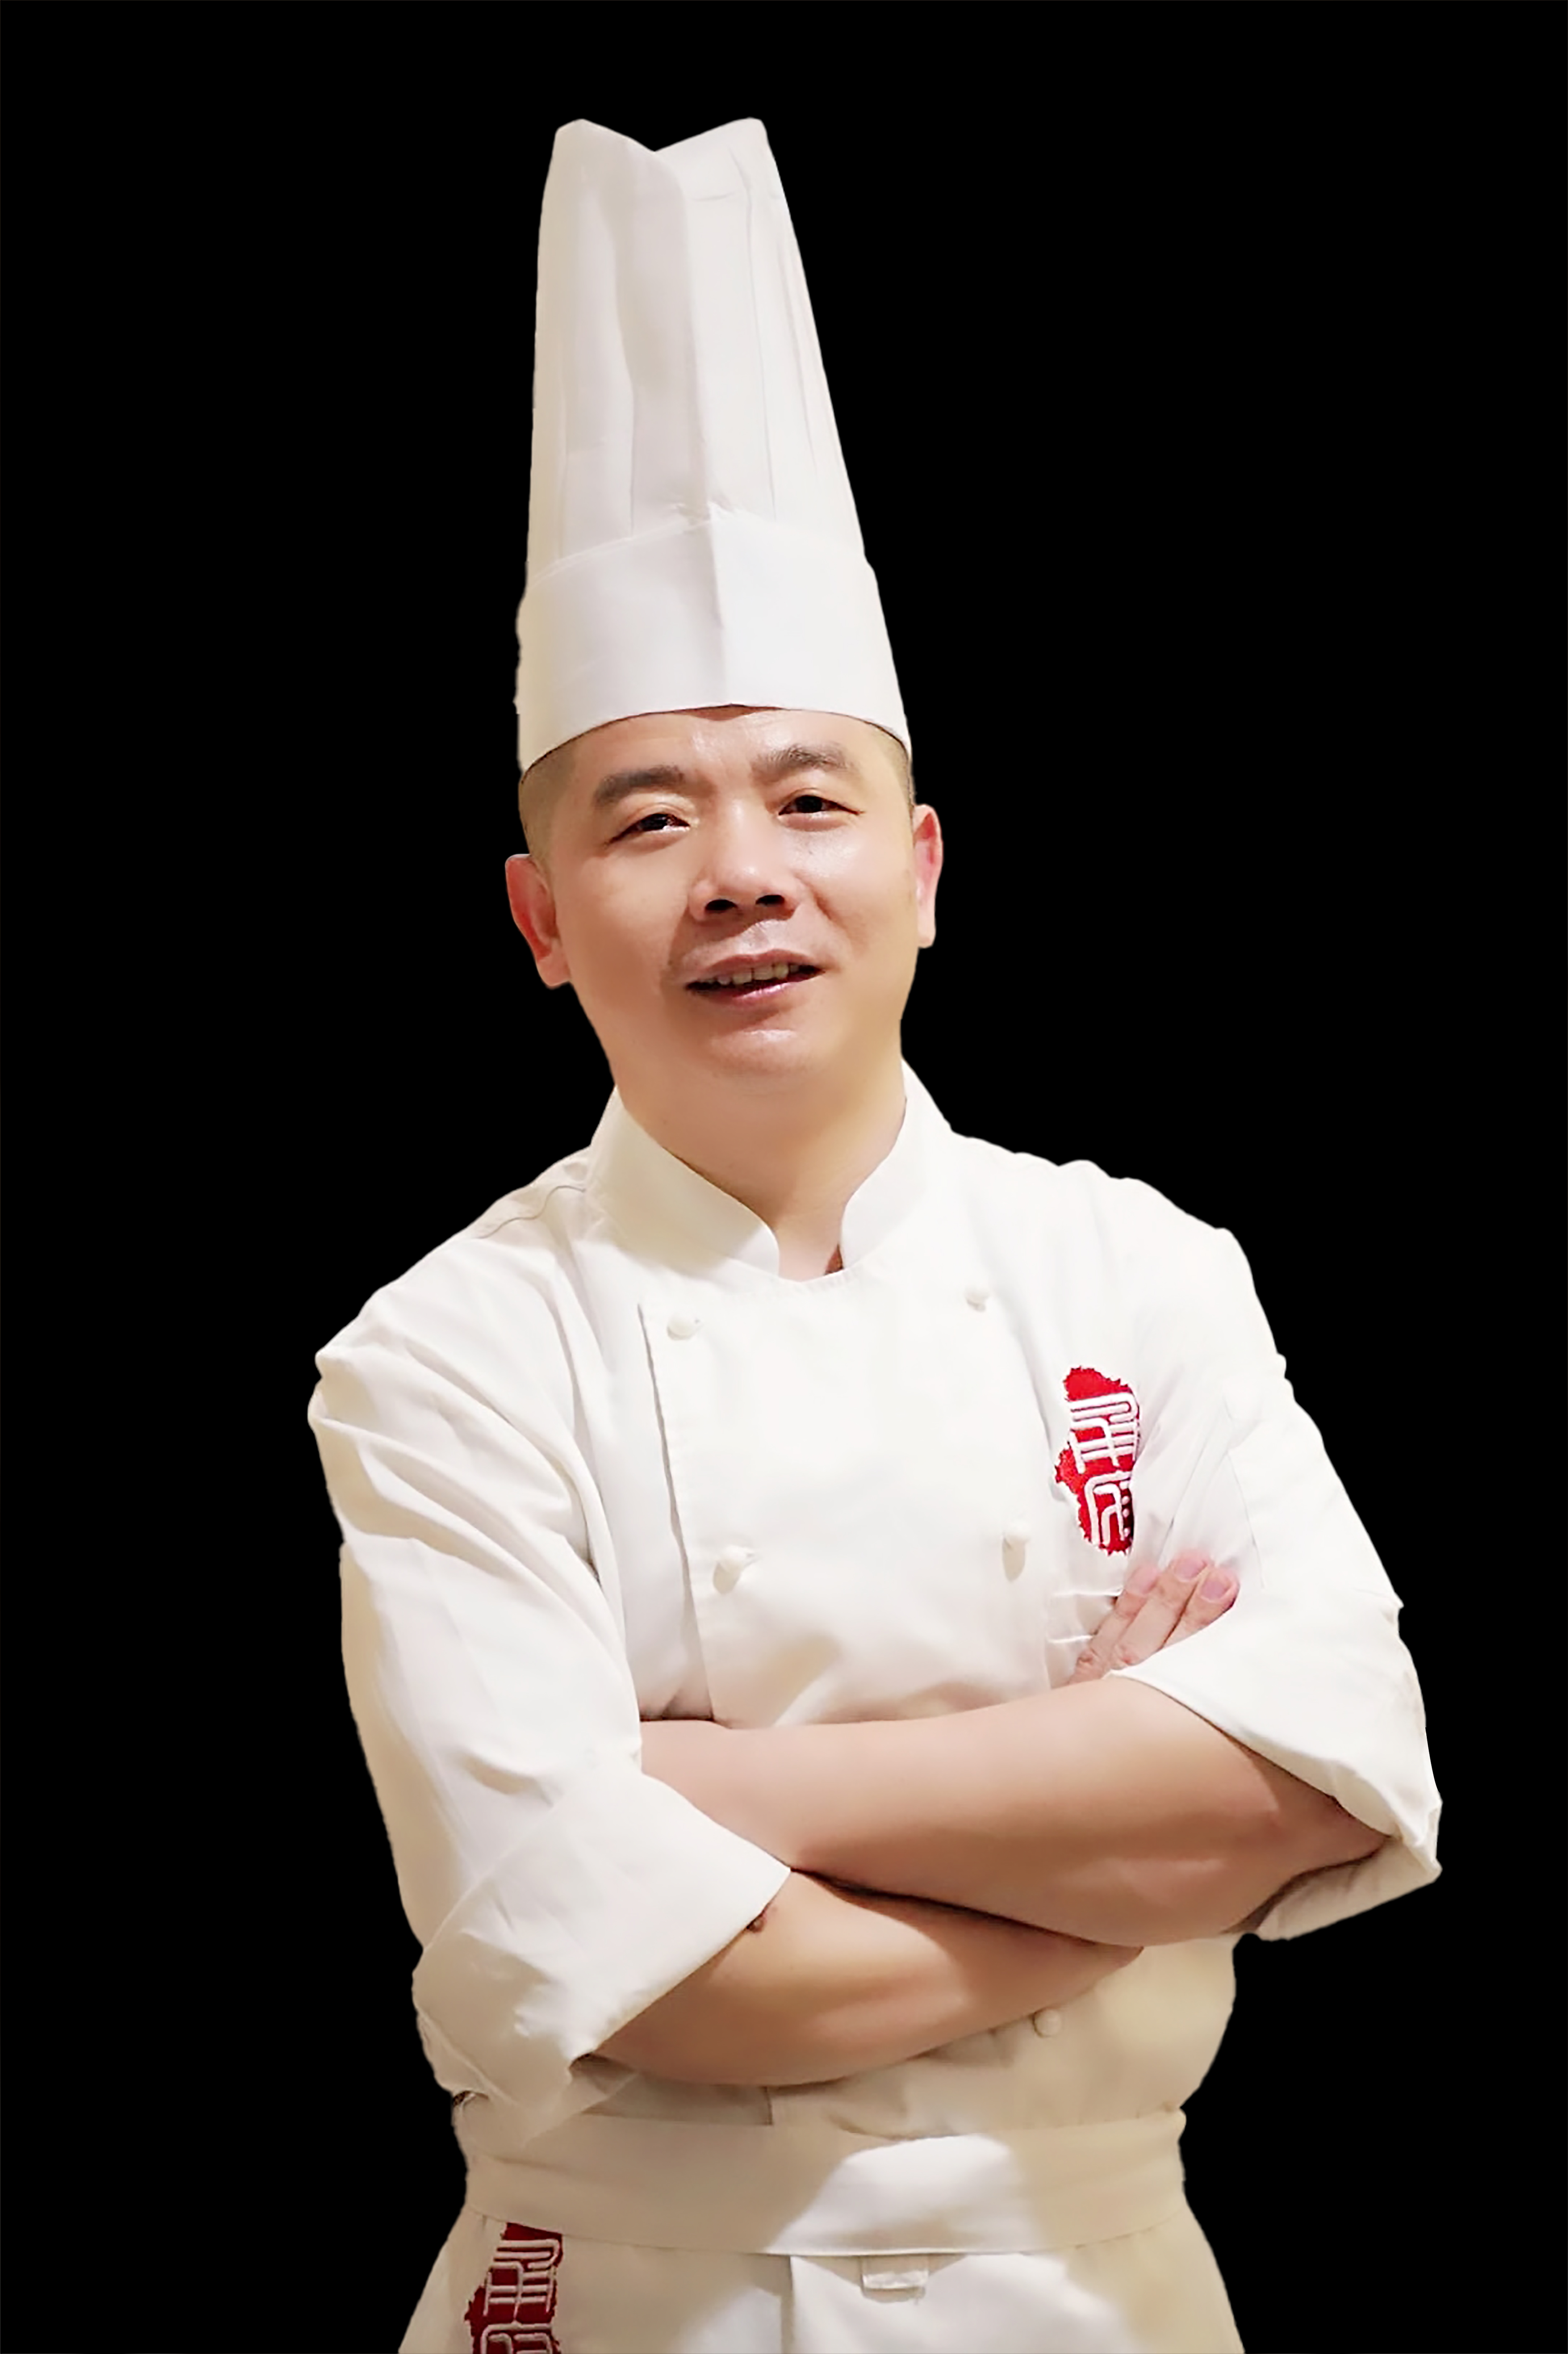 Executive Chef Xu Kunlei of Yong Fu, Shanghai